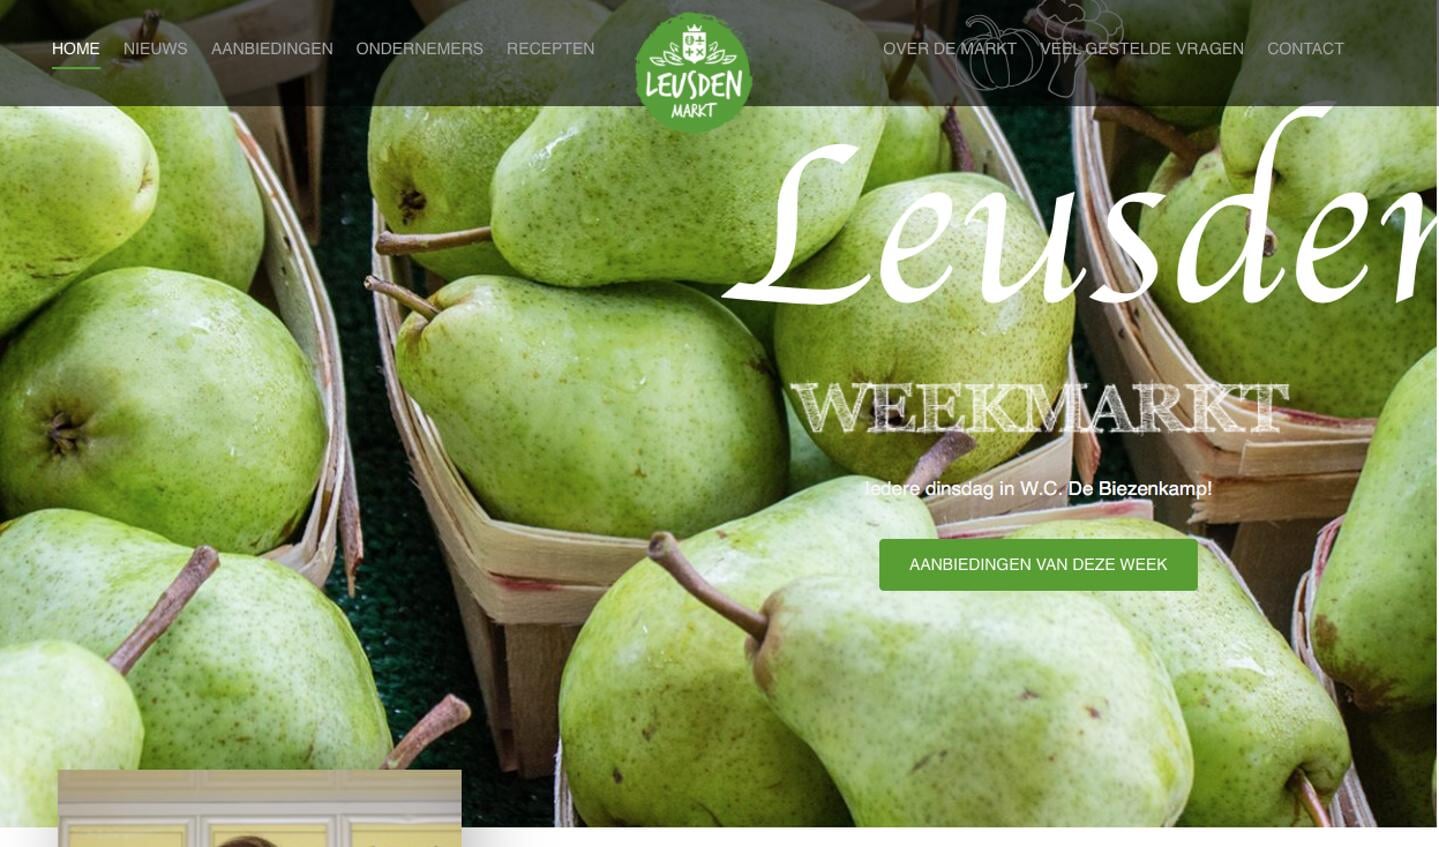 Website Markt Leusden